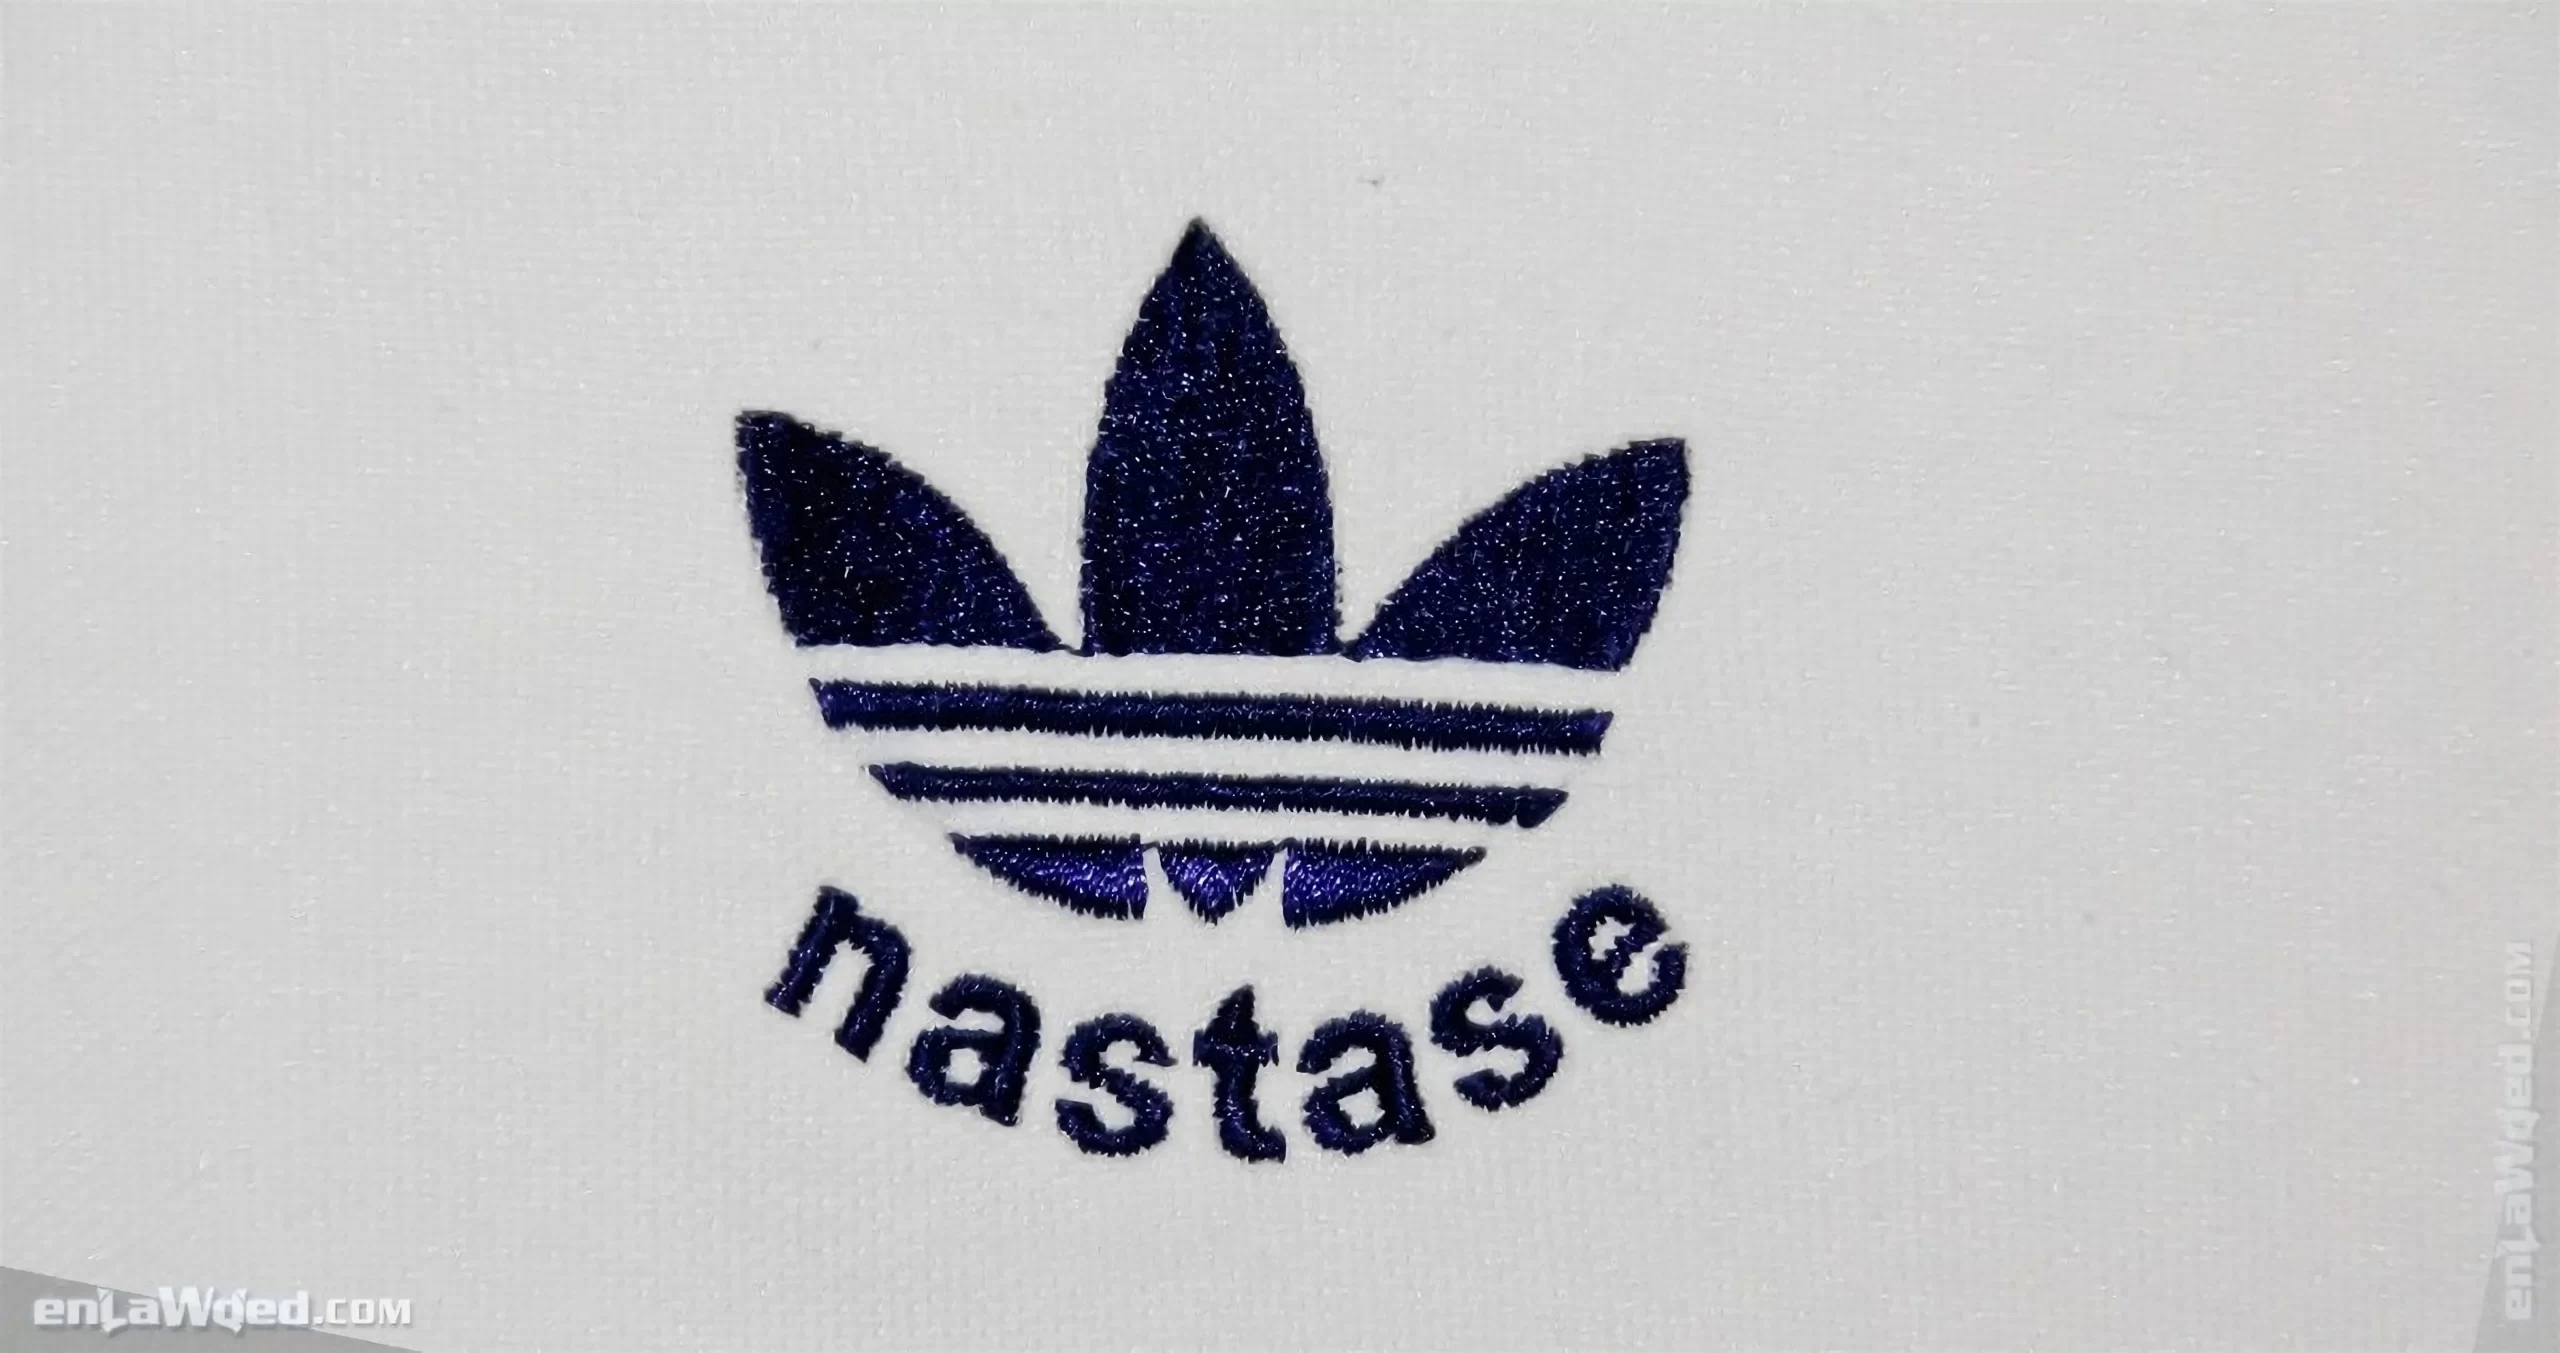 Men’s 2005 Ilie Nastase Track Top by Adidas Originals: Treasure (EnLawded.com file #lmchk89922ip2y121661kg9st)